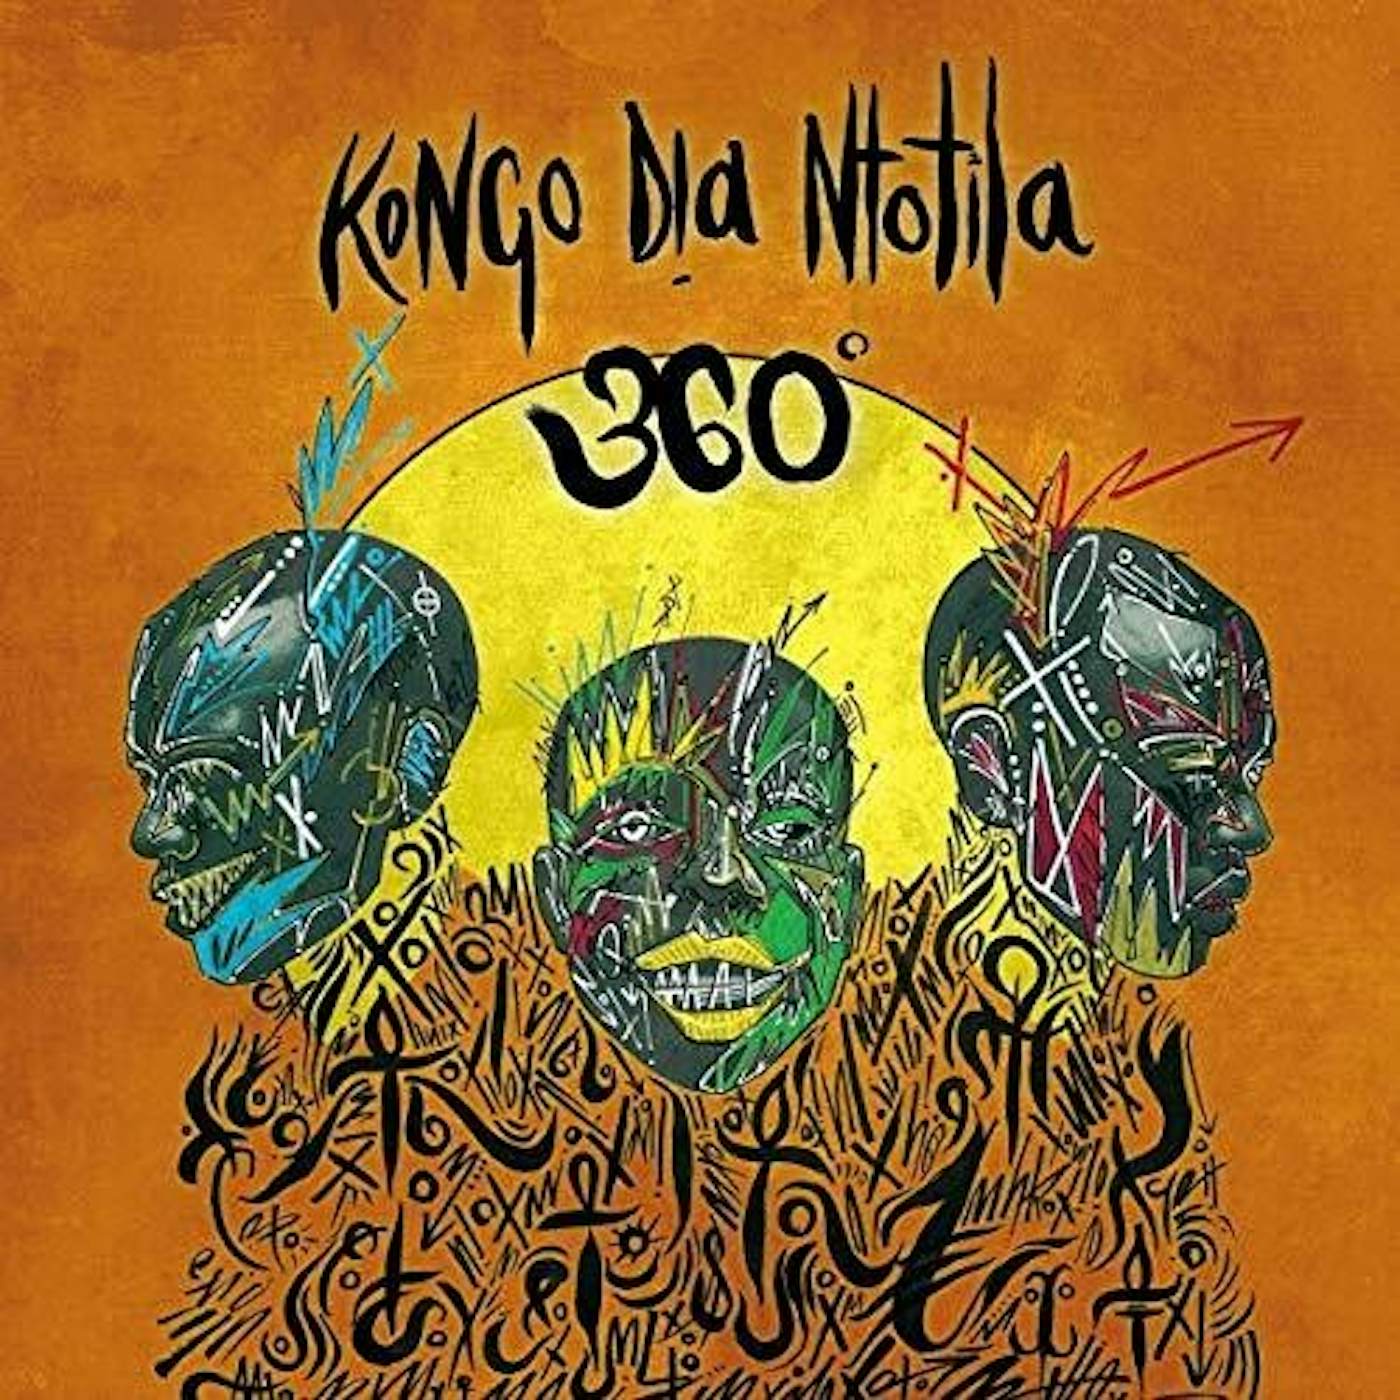 Kongo Dia Ntotila 360 DEGREES CD